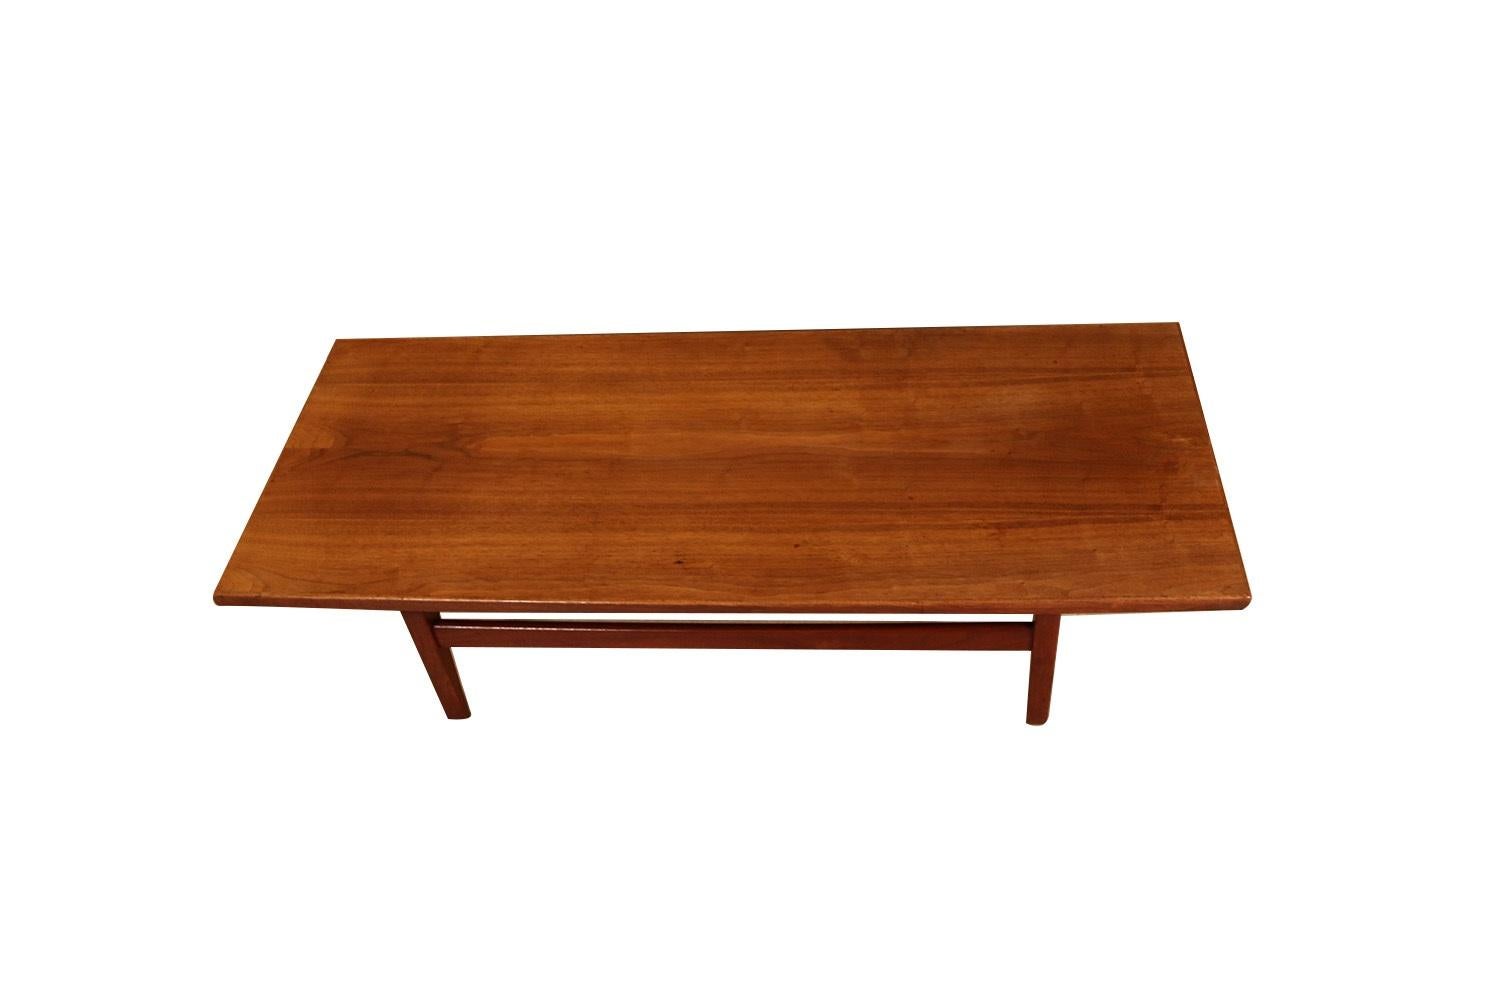 Moderner Couchtisch aus Nussbaumholz aus der Jahrhundertmitte der 1960er Jahre, lange Bank von Jens Risom. Dieser schöne Tisch von Jens Risom hat eine Platte aus Walnussholz, die anmutig über konisch zulaufenden und ausgestellten Beinen schwebt. Die